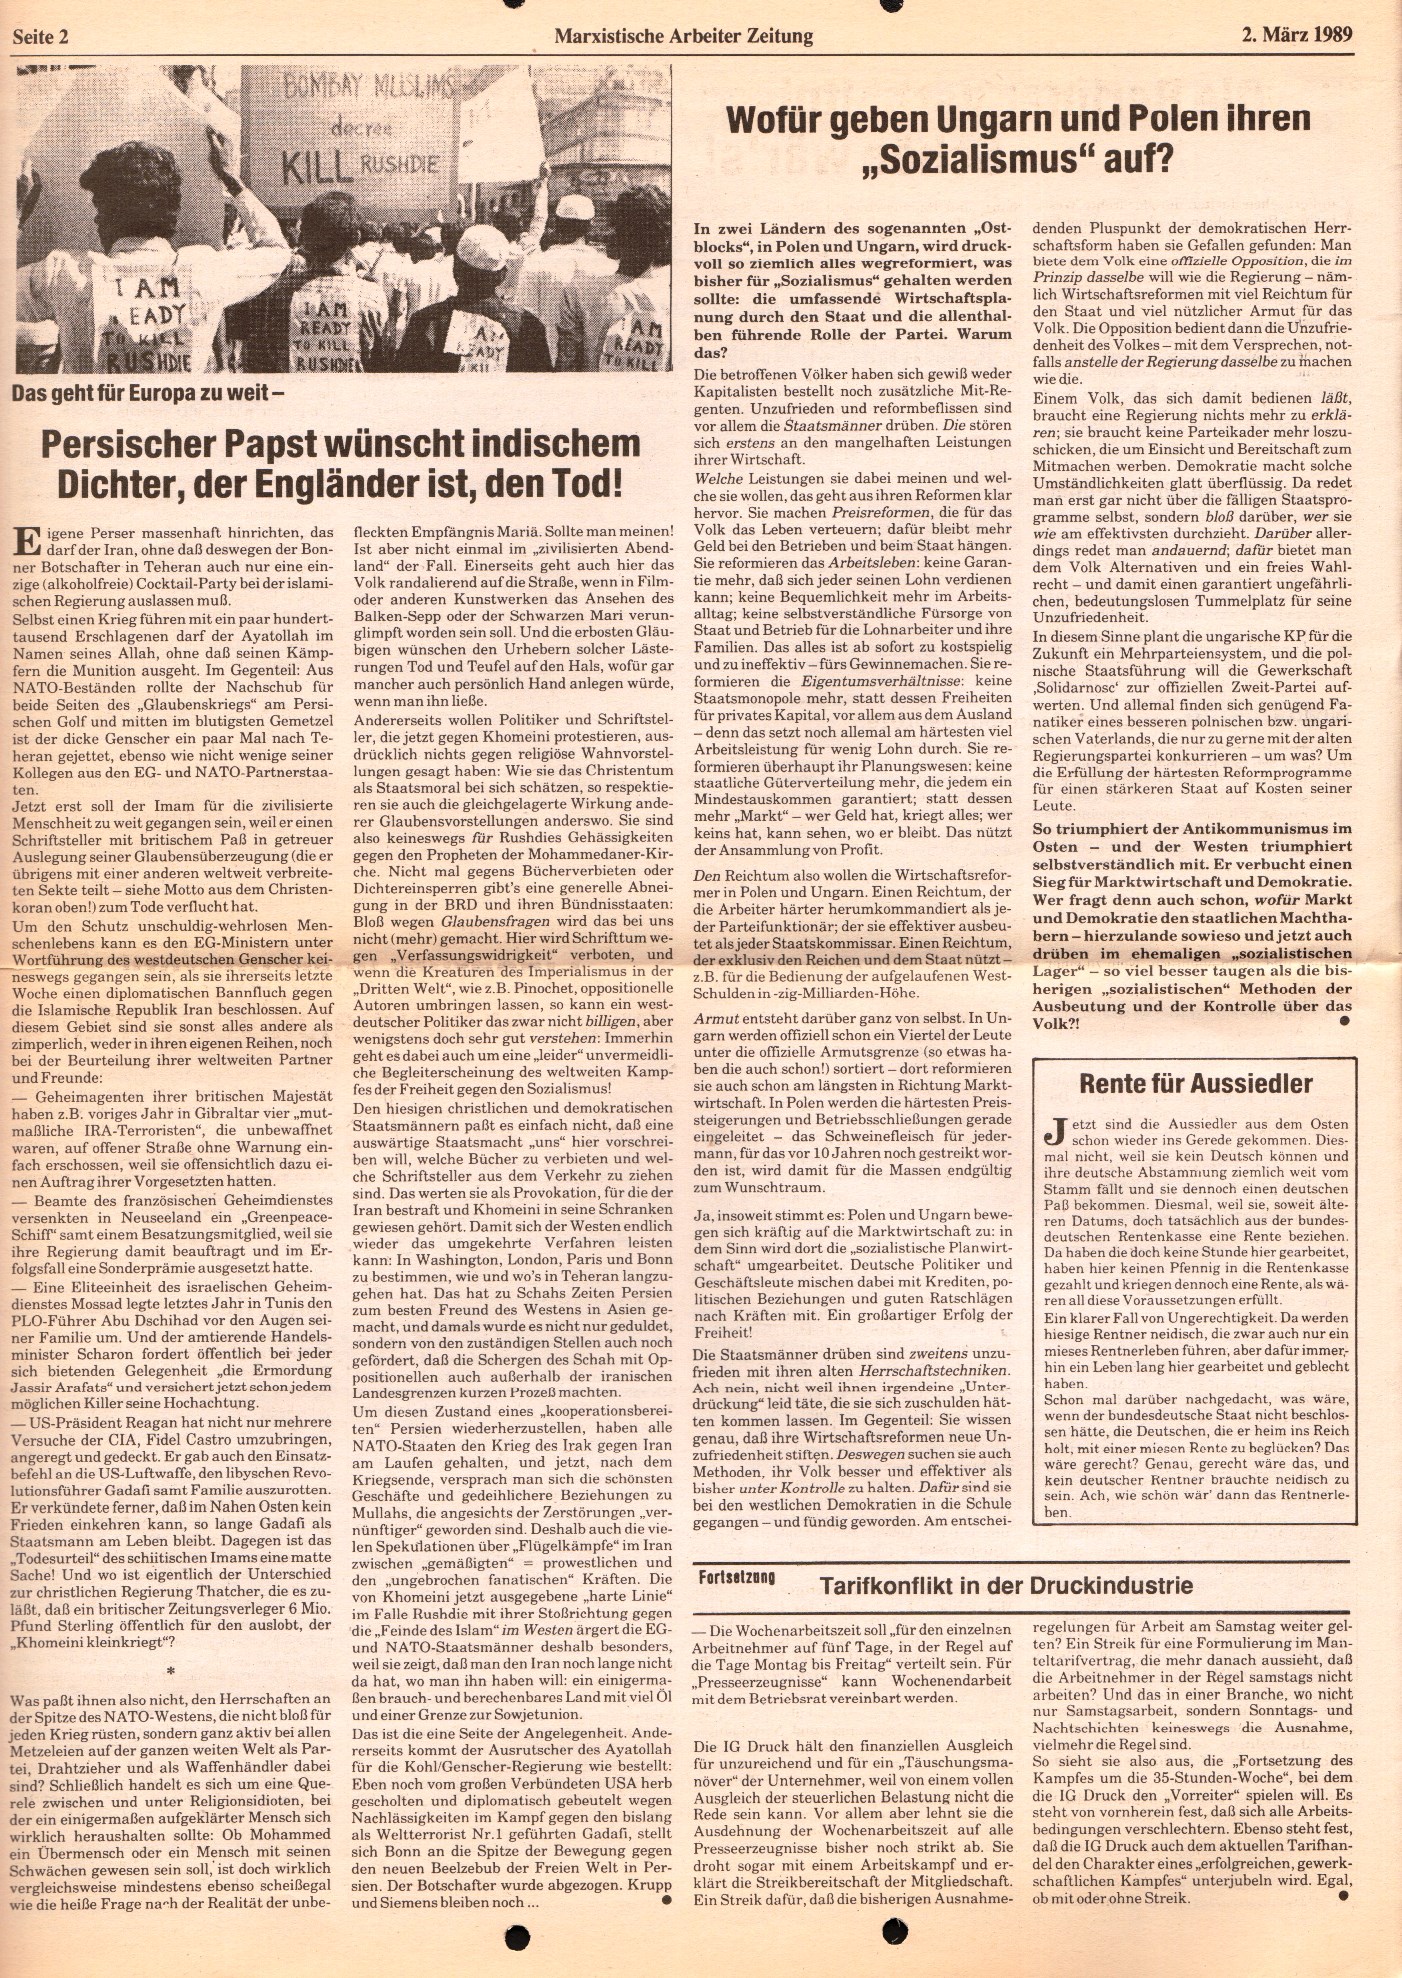 BW_MG_Marxistische_Arbeiterzeitung_19890302_02